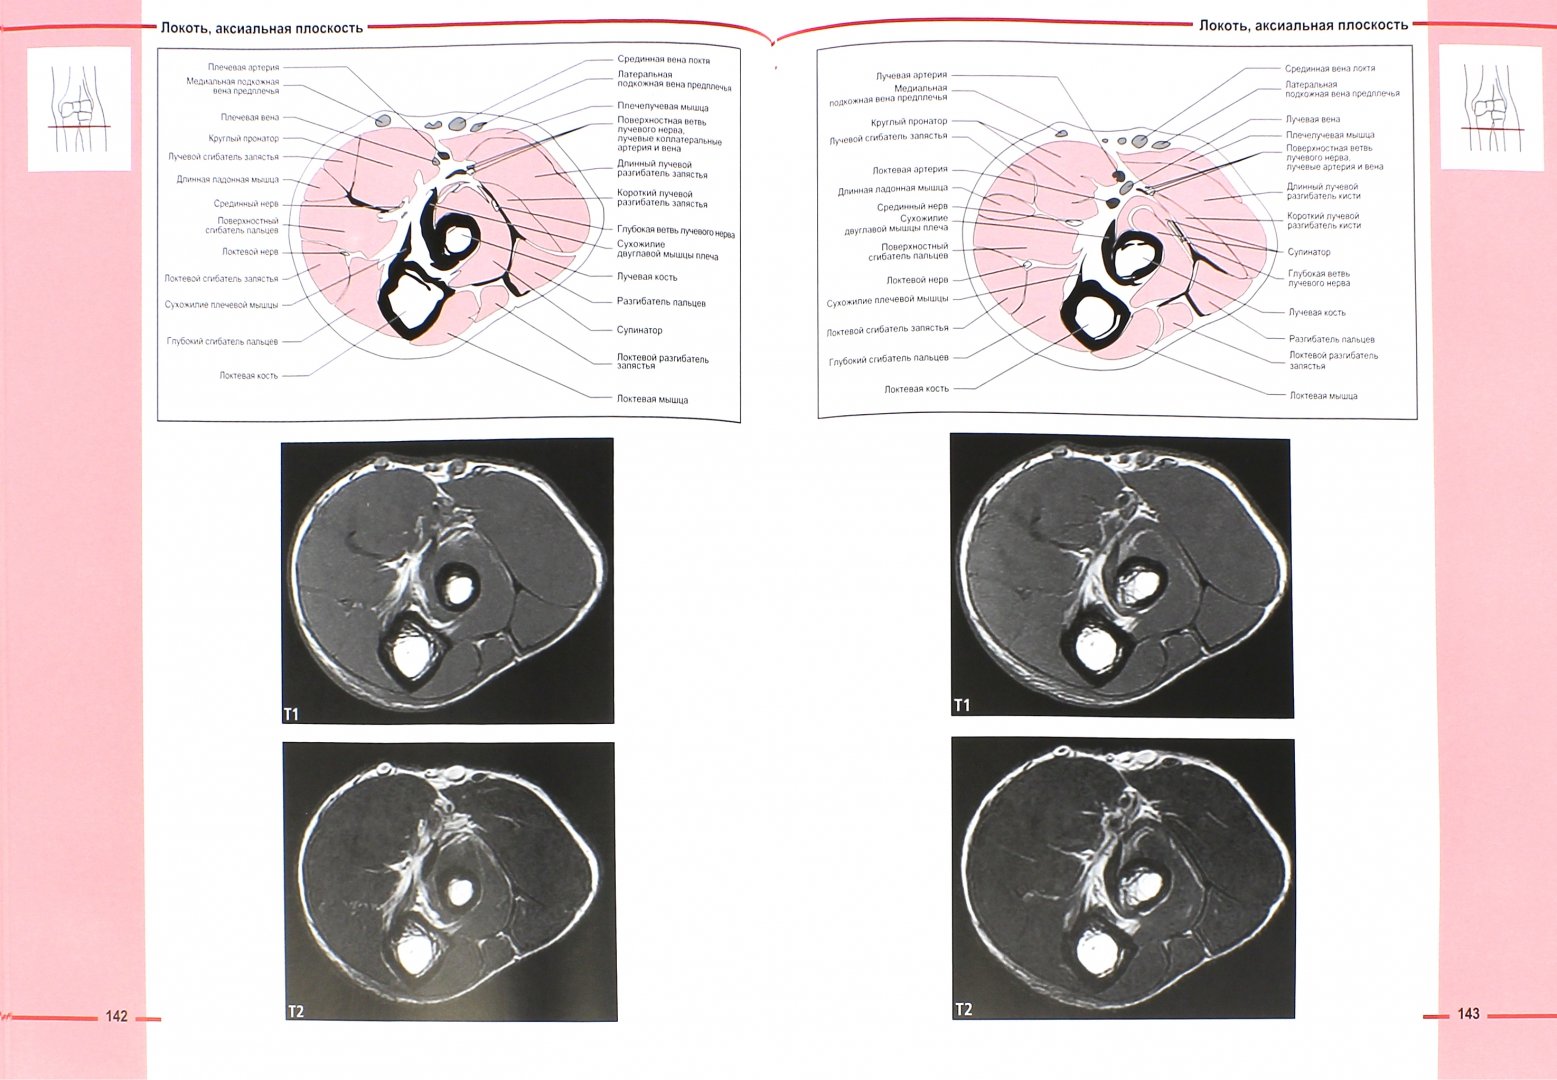 Иллюстрация 1 из 15 для МРТ костно-мышечной системы. Атлас - Роен, Лютьен-Дреколл, Хойк, Стайнборн | Лабиринт - книги. Источник: Лабиринт